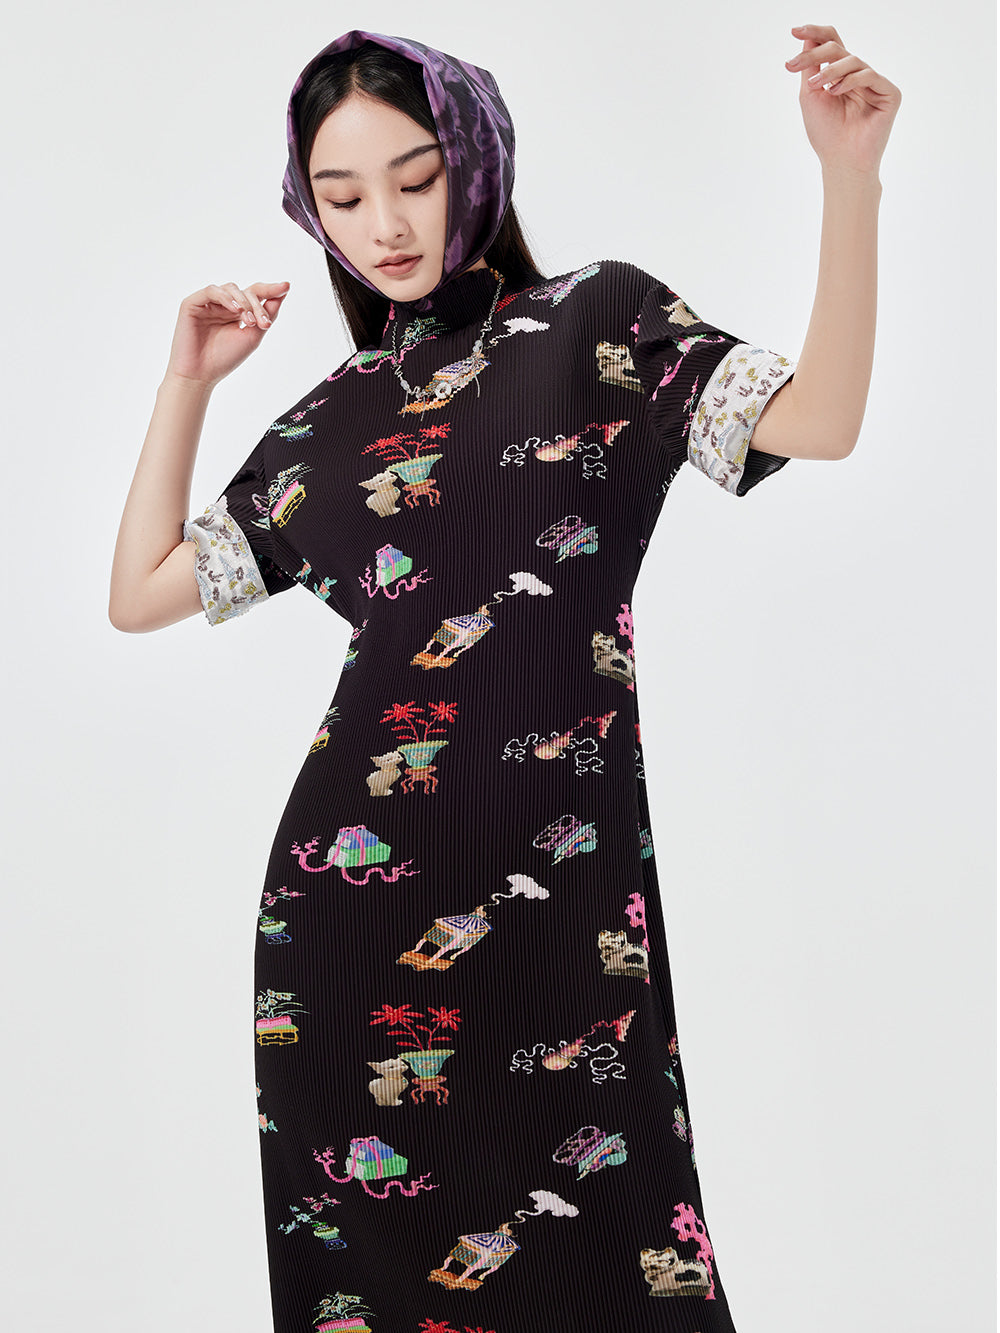 MUKZIN Printed Short-sleeved Cheongsam Qi Pao